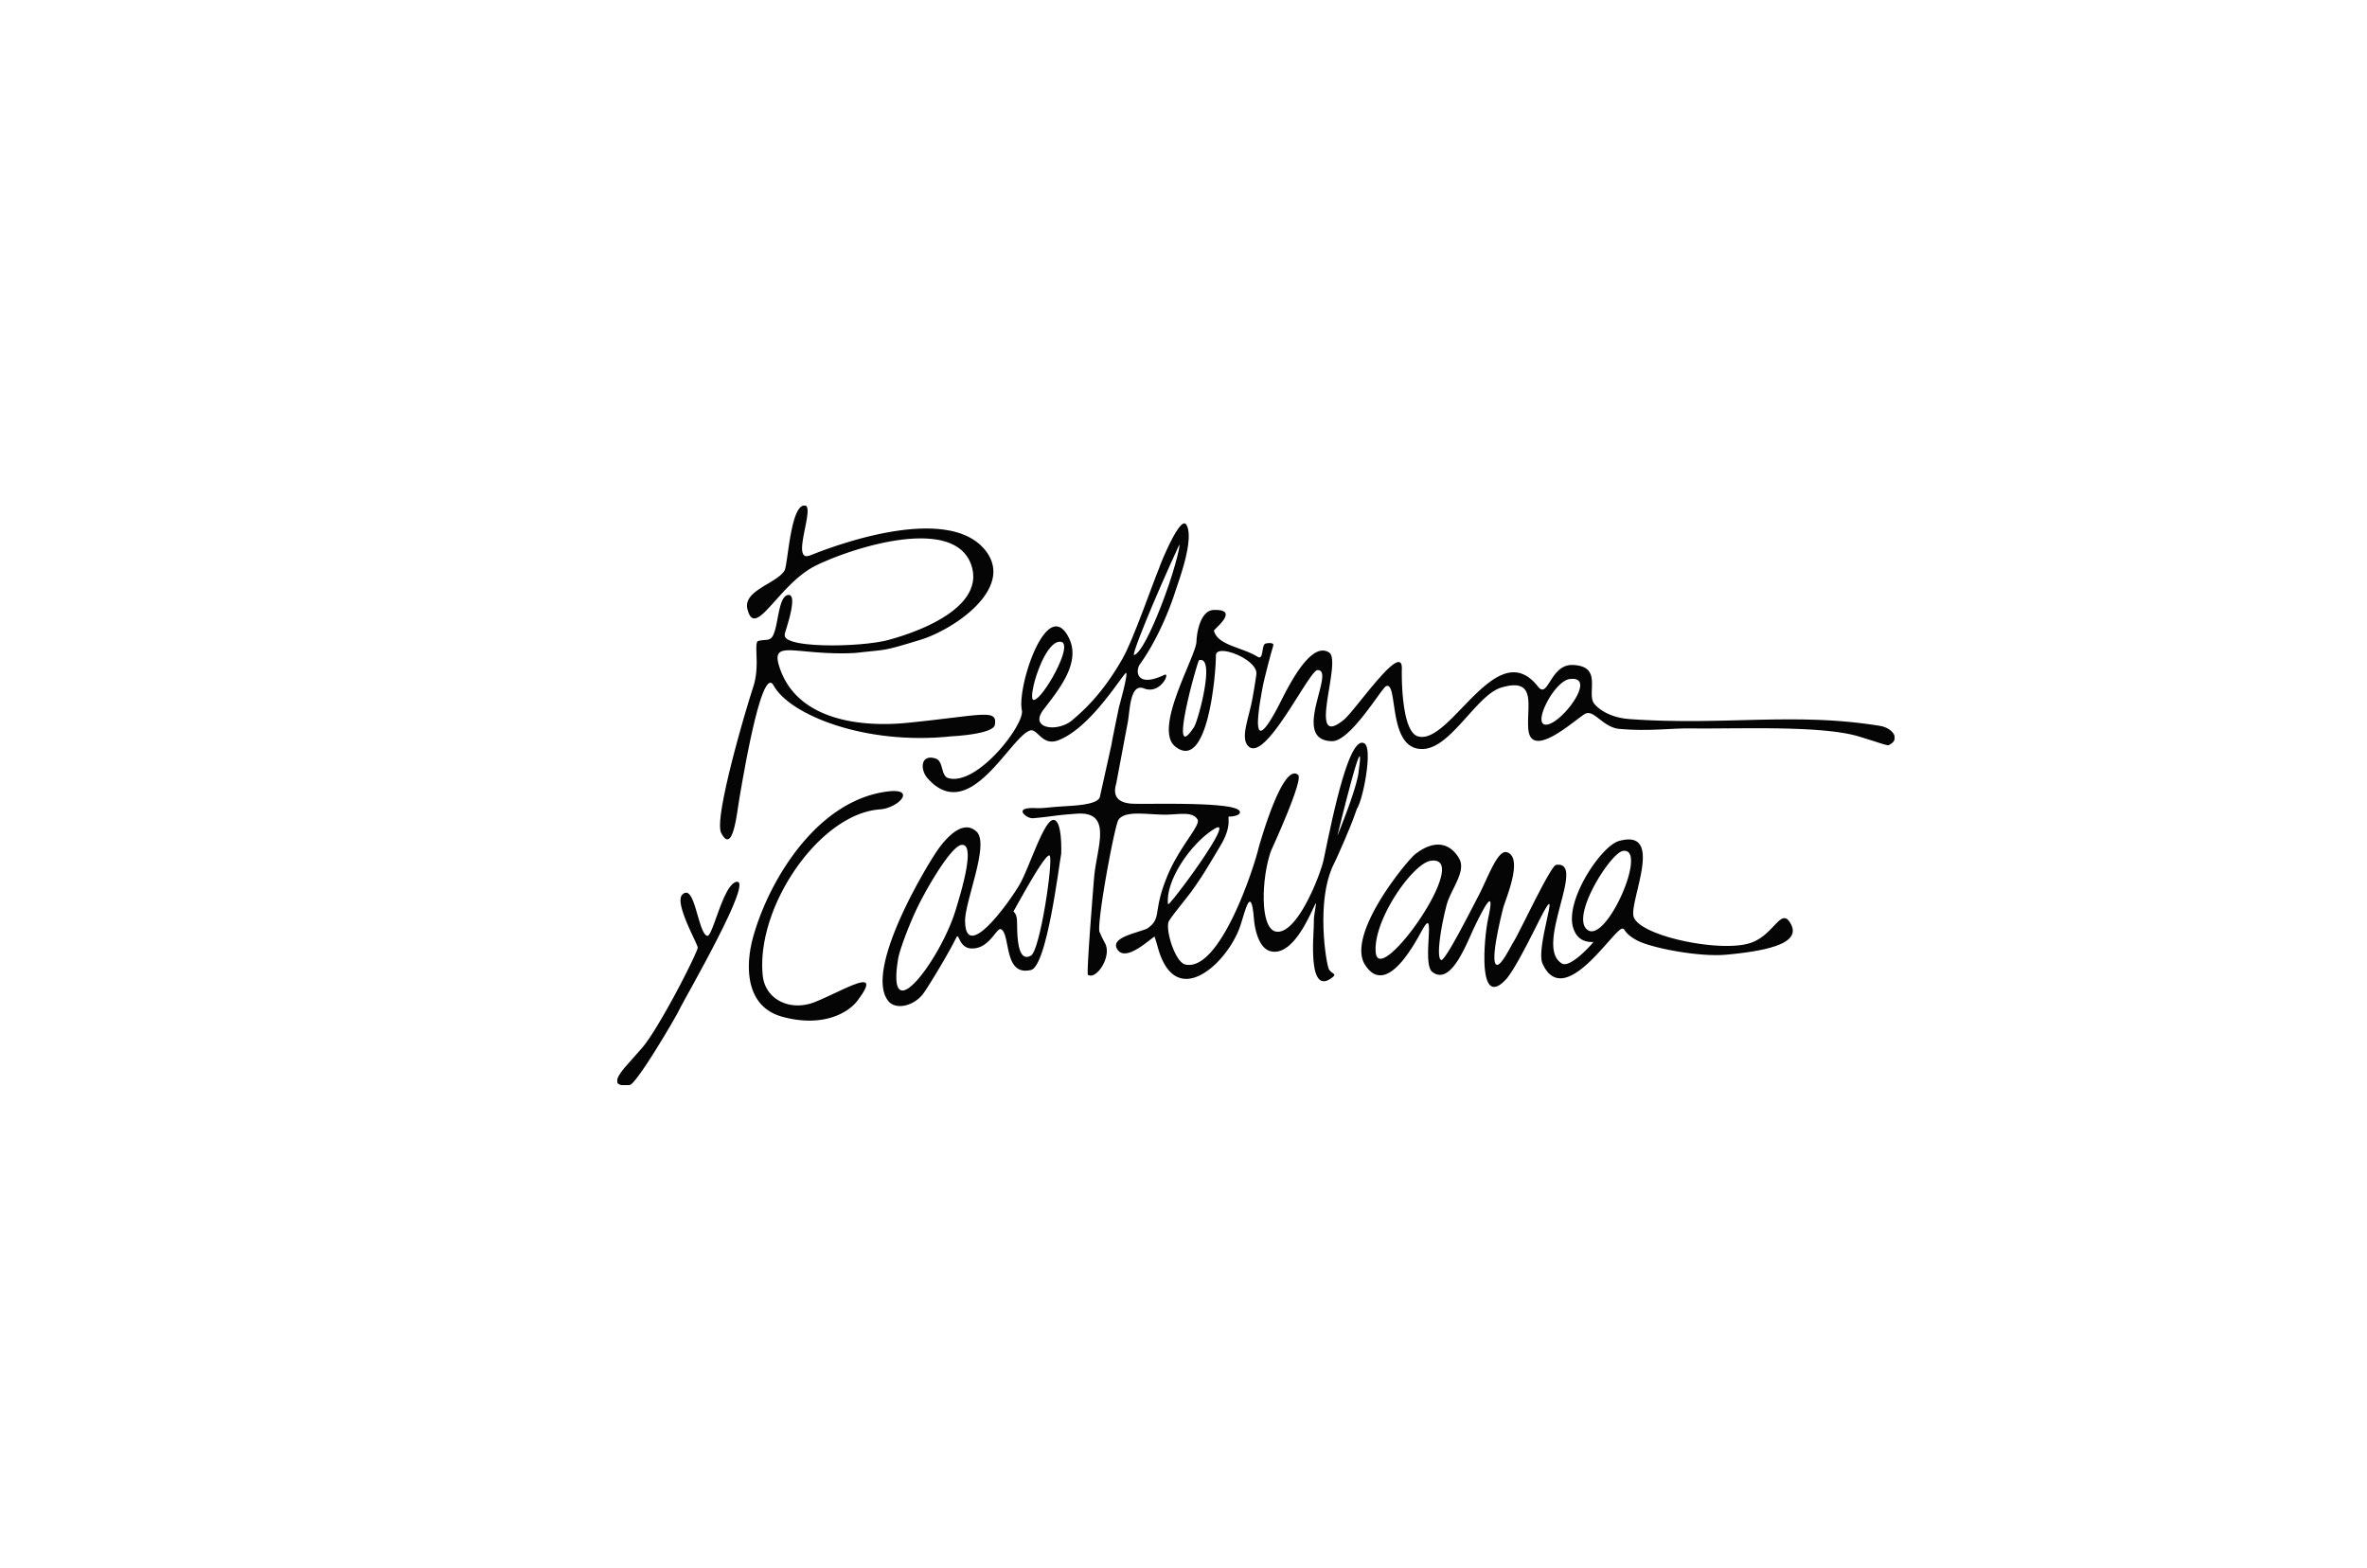 REFORMA-Y-CASTELLANA_5